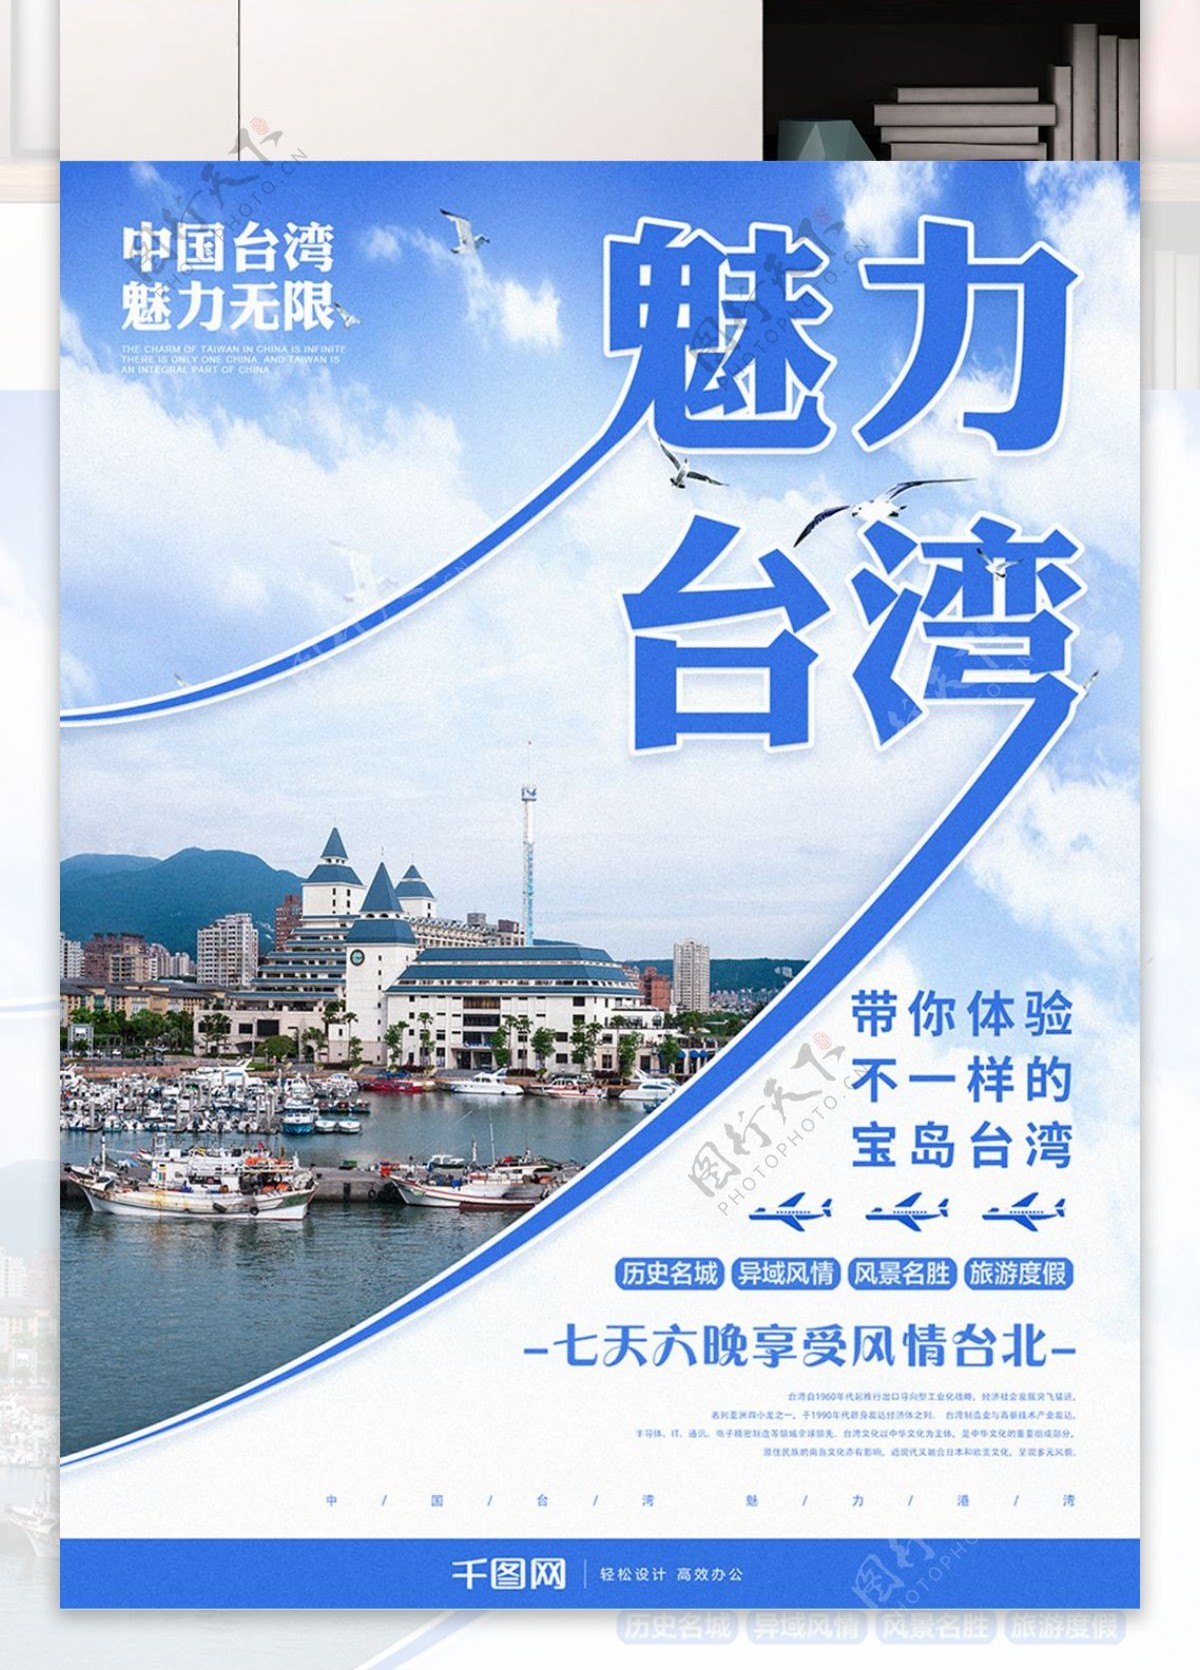 原创创意魅力台湾旅游宣传海报